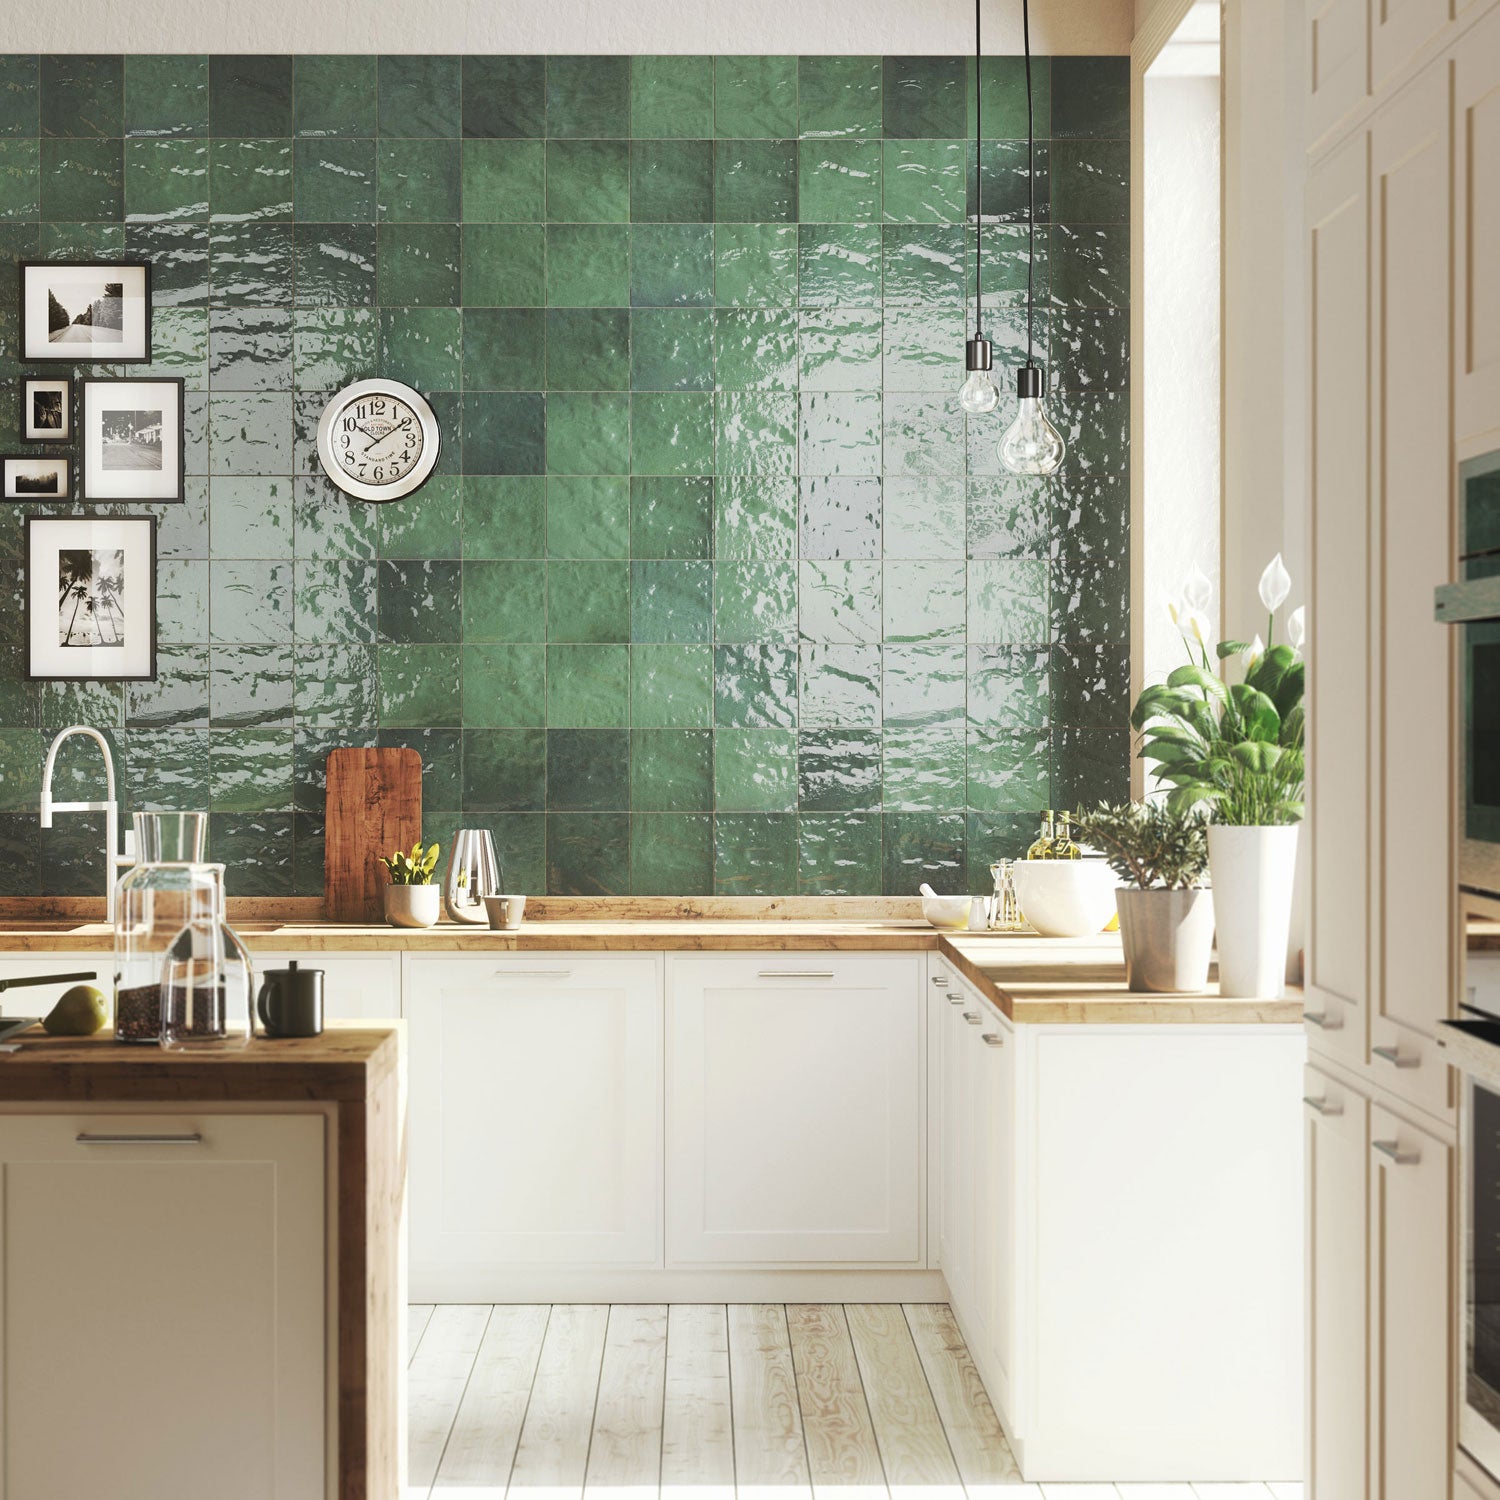 Emser Tile - Passion 9" x 9" Wall Tile - Verde